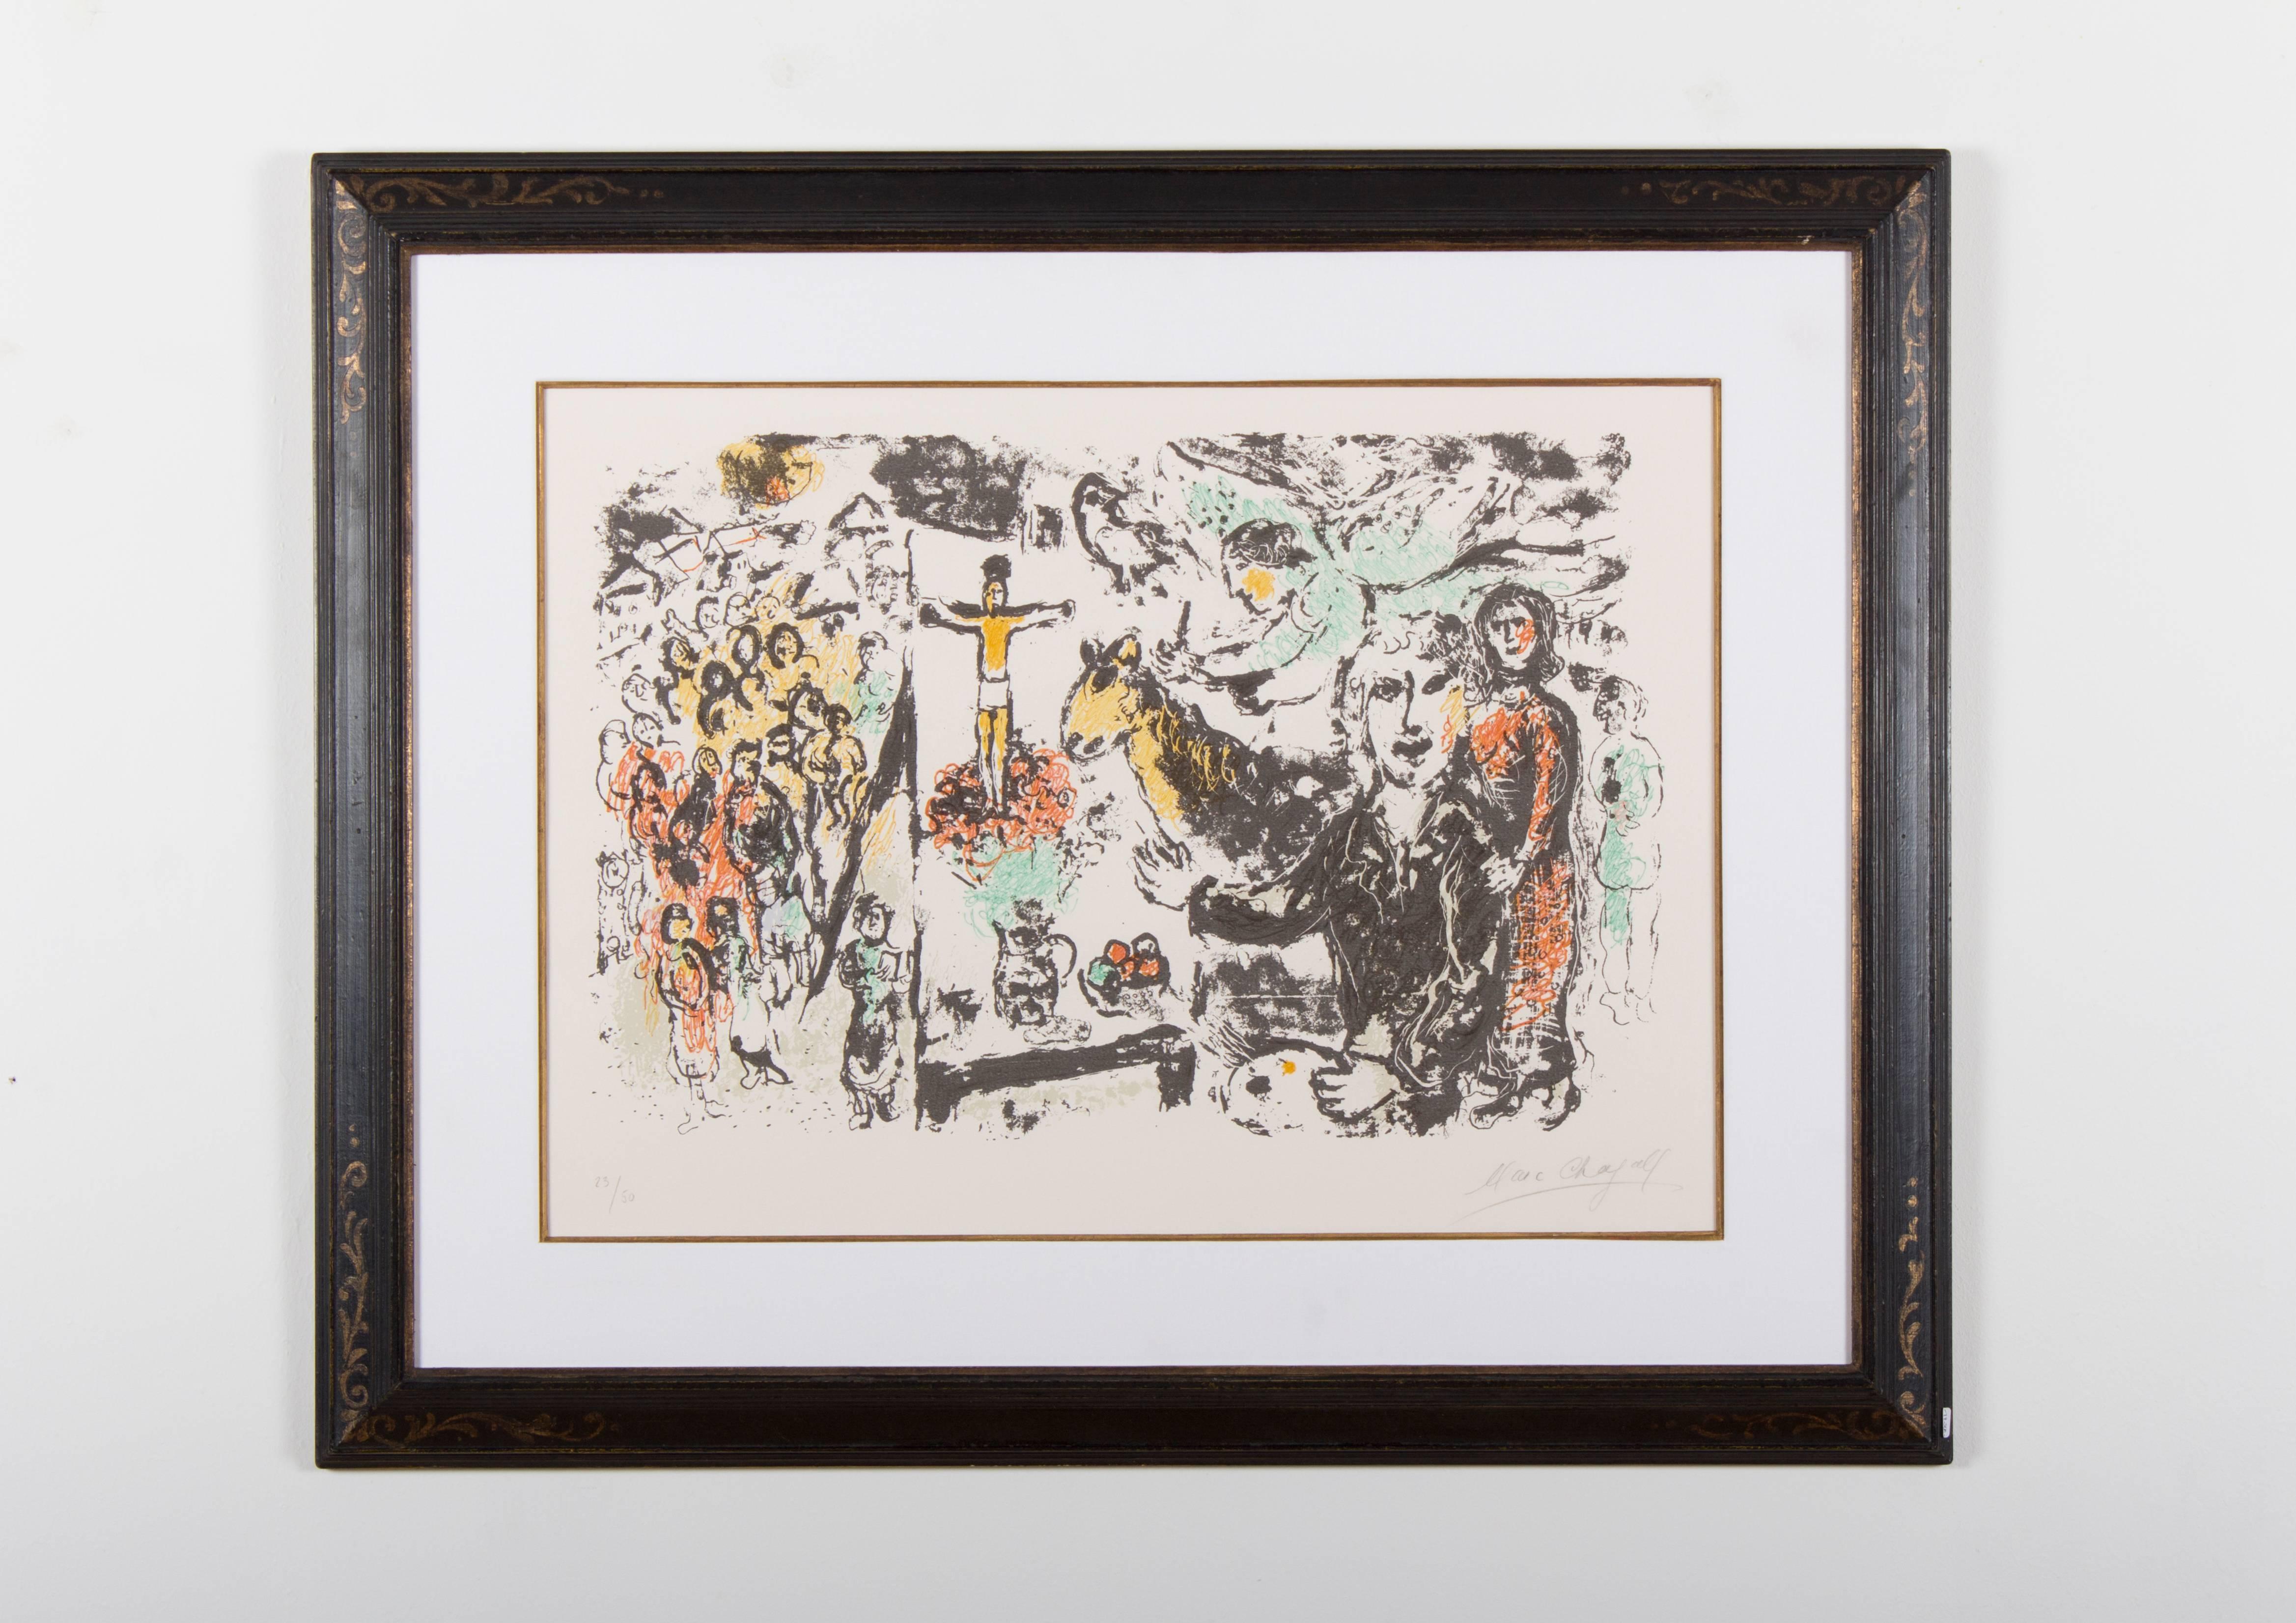 L'Artiste et Thèmes Bibliques, 1974 - Print by Marc Chagall